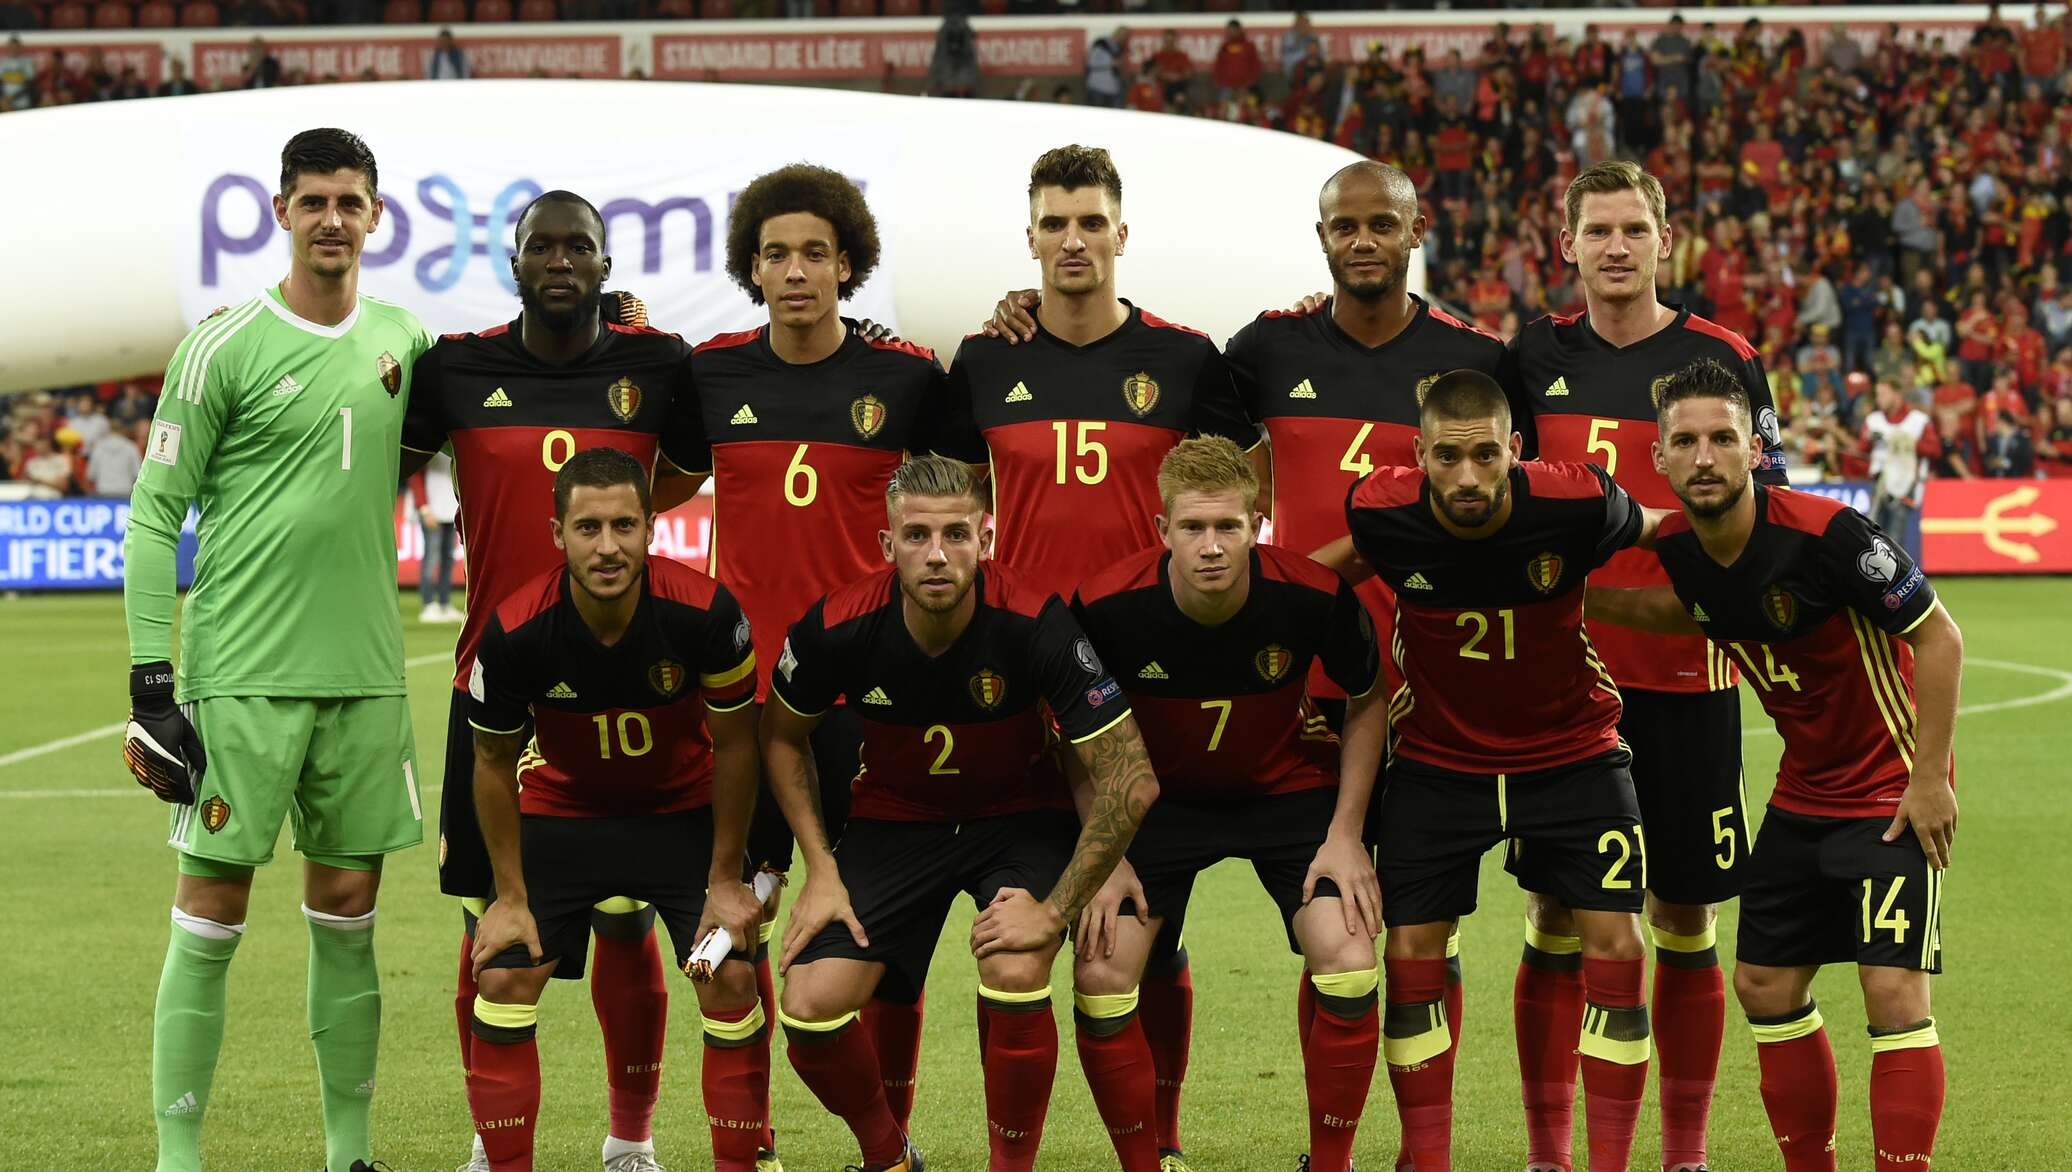 состав сборной бельгии по футболу